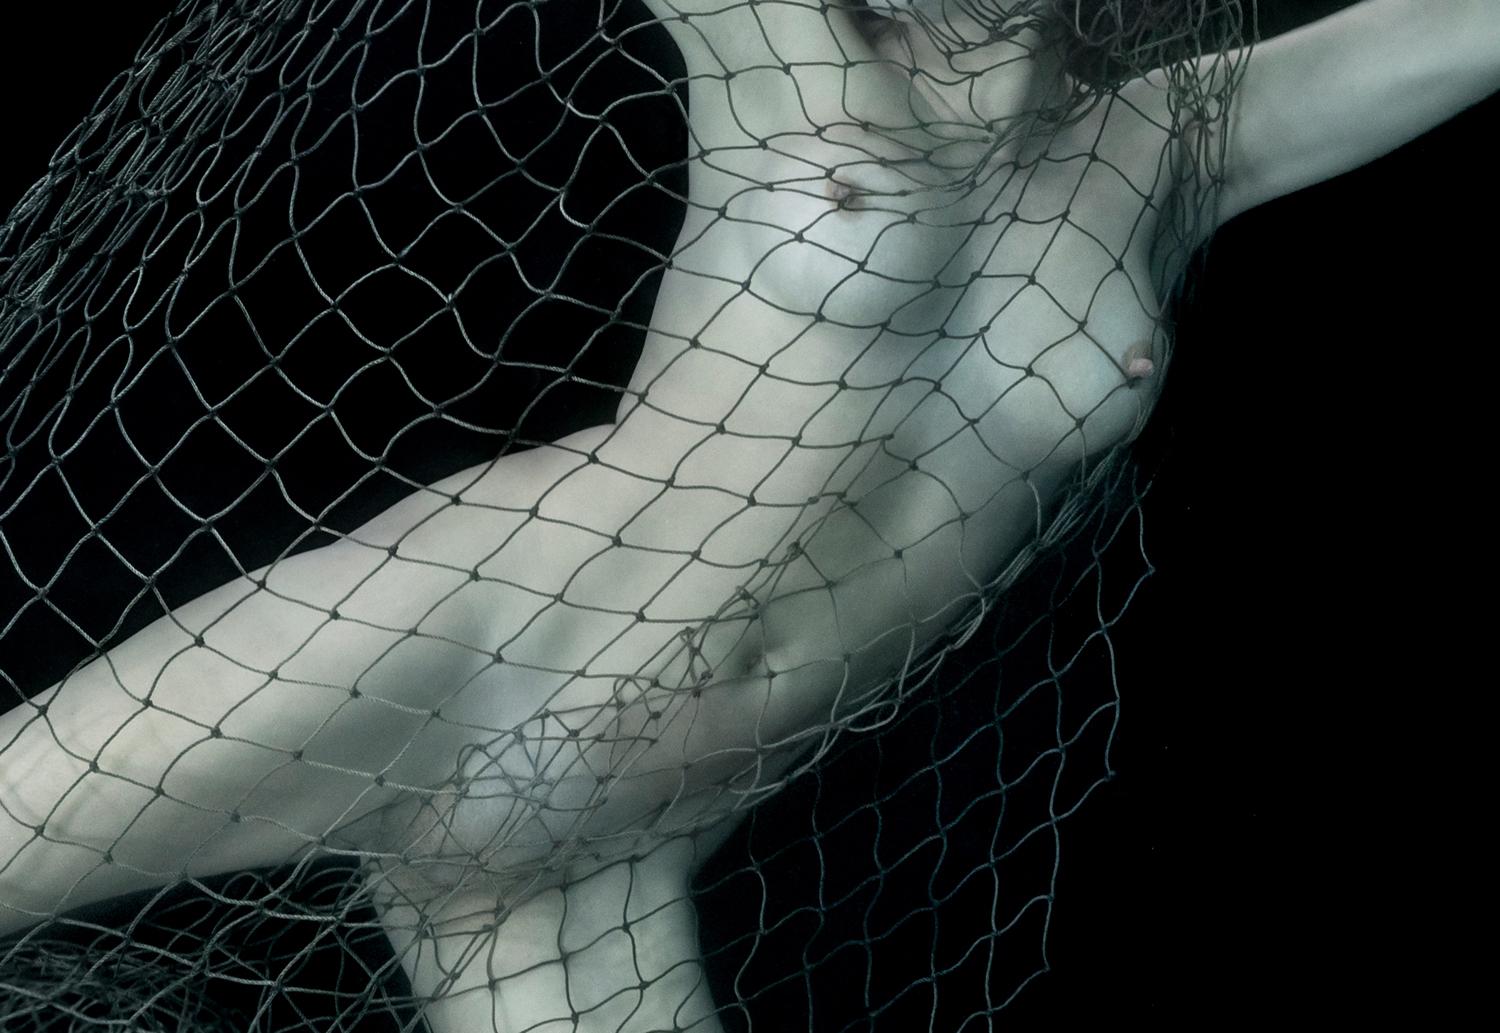 Ein Unterwasser-Aktfoto einer jungen Frau, die sich in einem Fischernetz verfangen hat.

Vom Künstler signierter Originaldruck in Galeriequalität. 
Digitaler Pigmentdruck auf Archivierungspapier mit Metallic-Finish. 
Papierformat: 25